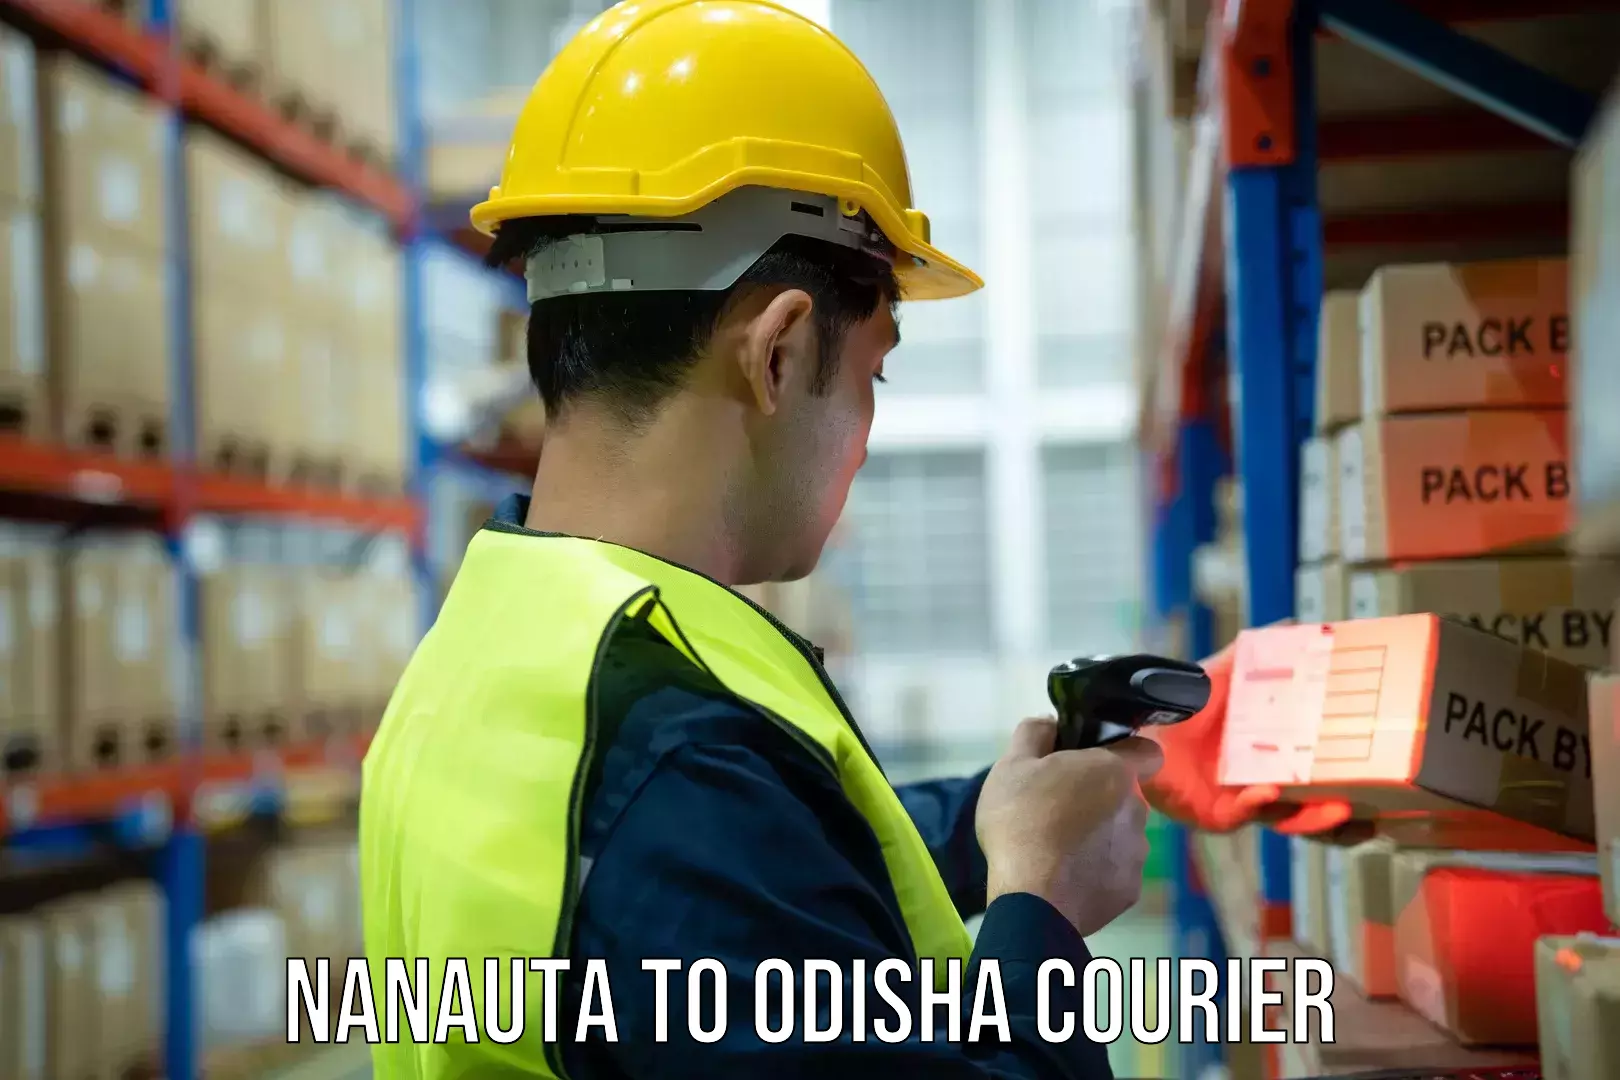 Courier service booking Nanauta to Agarpada